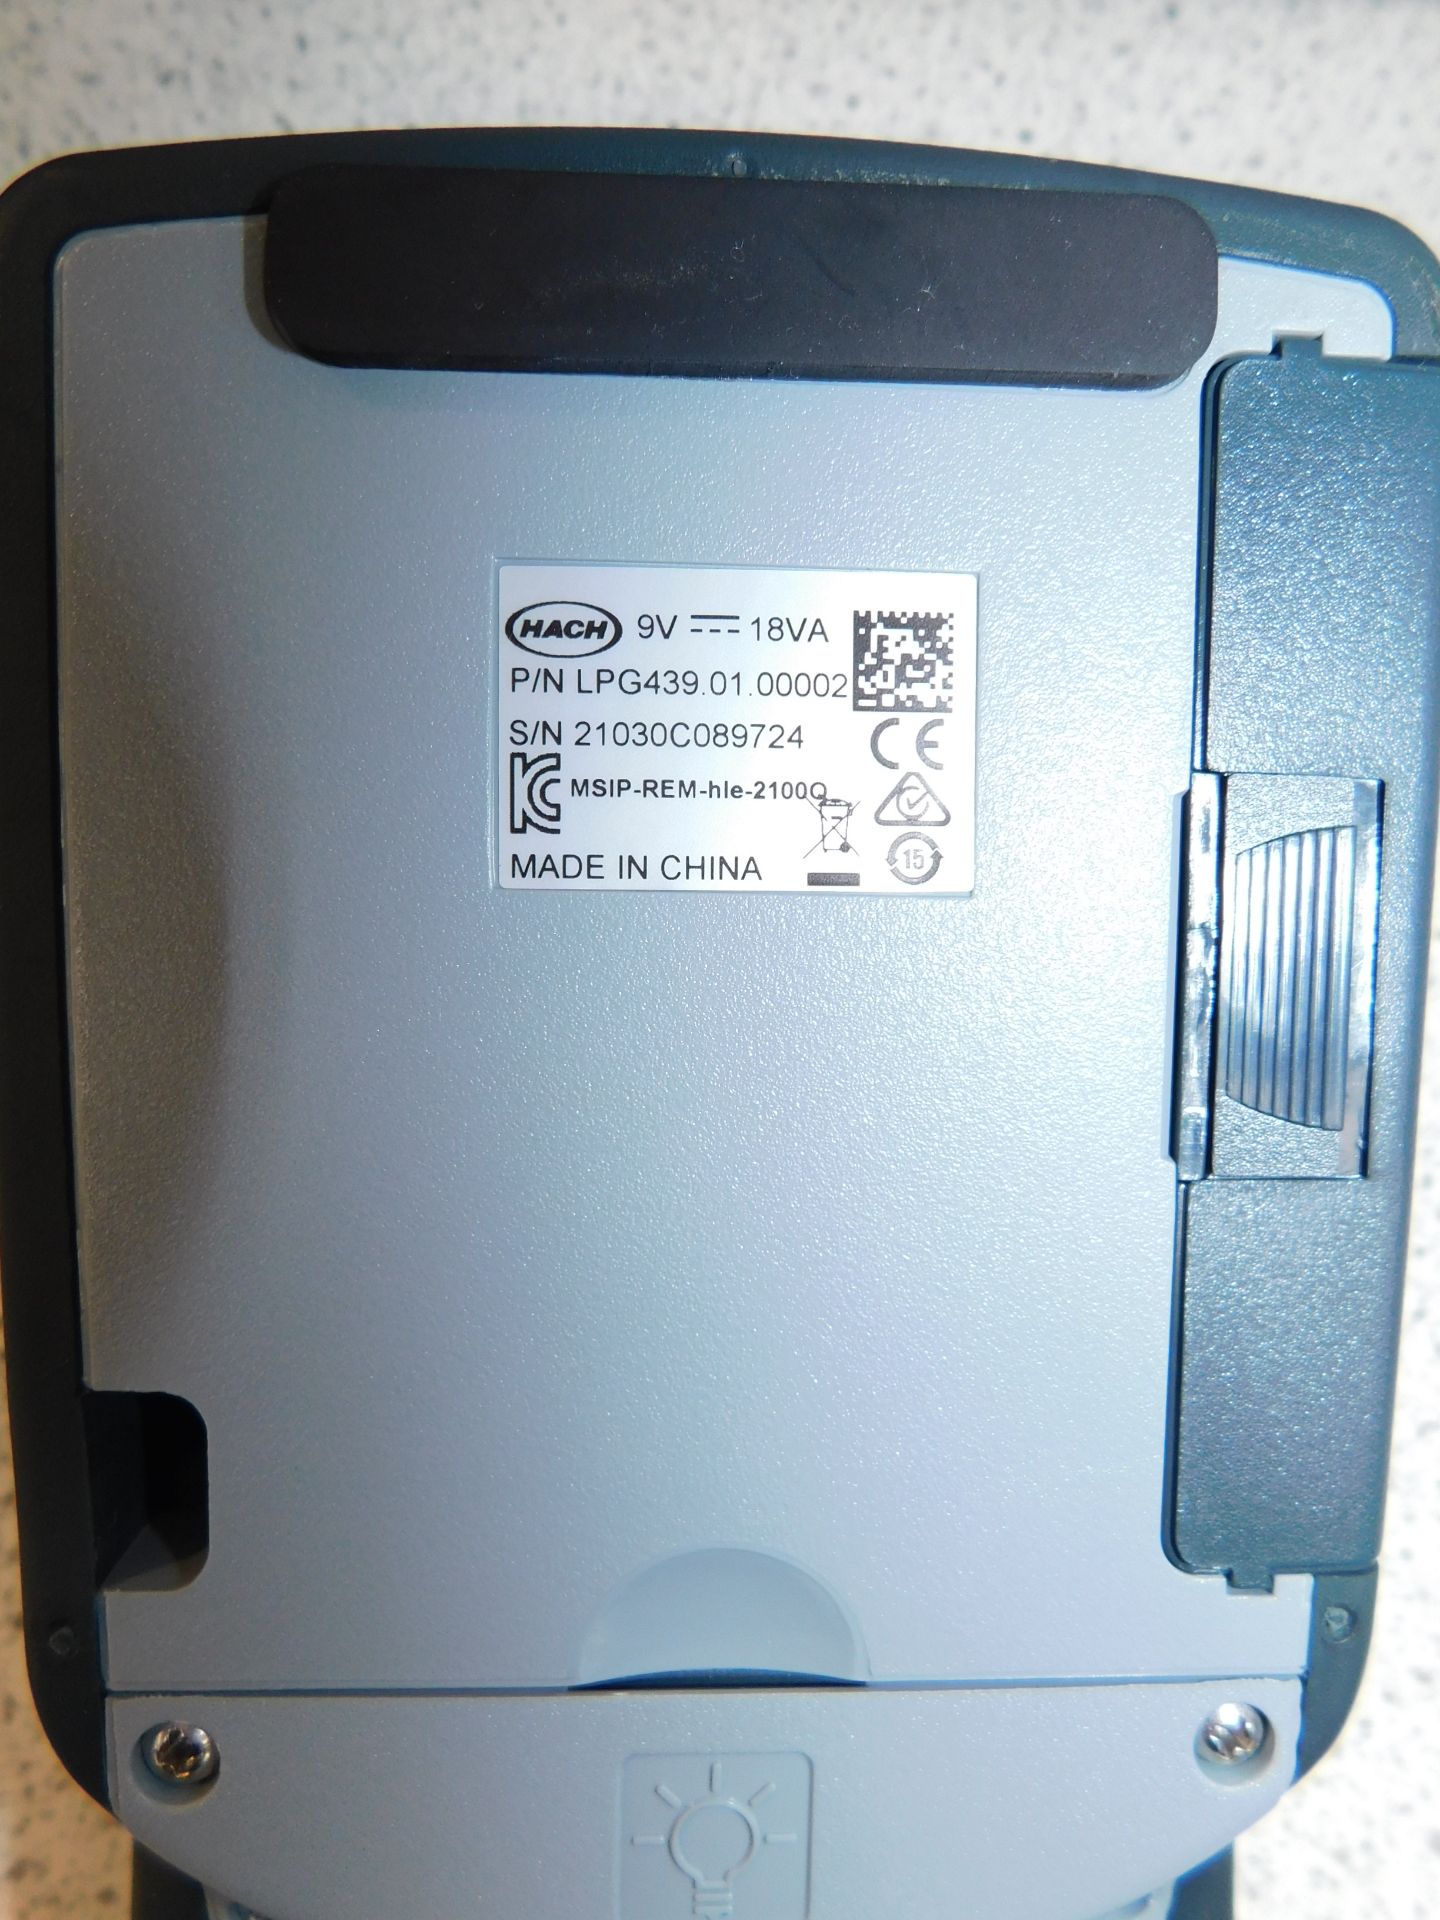 Hach 2100Q Turbidimeter, Serial Number 21030C089724, - Image 3 of 5